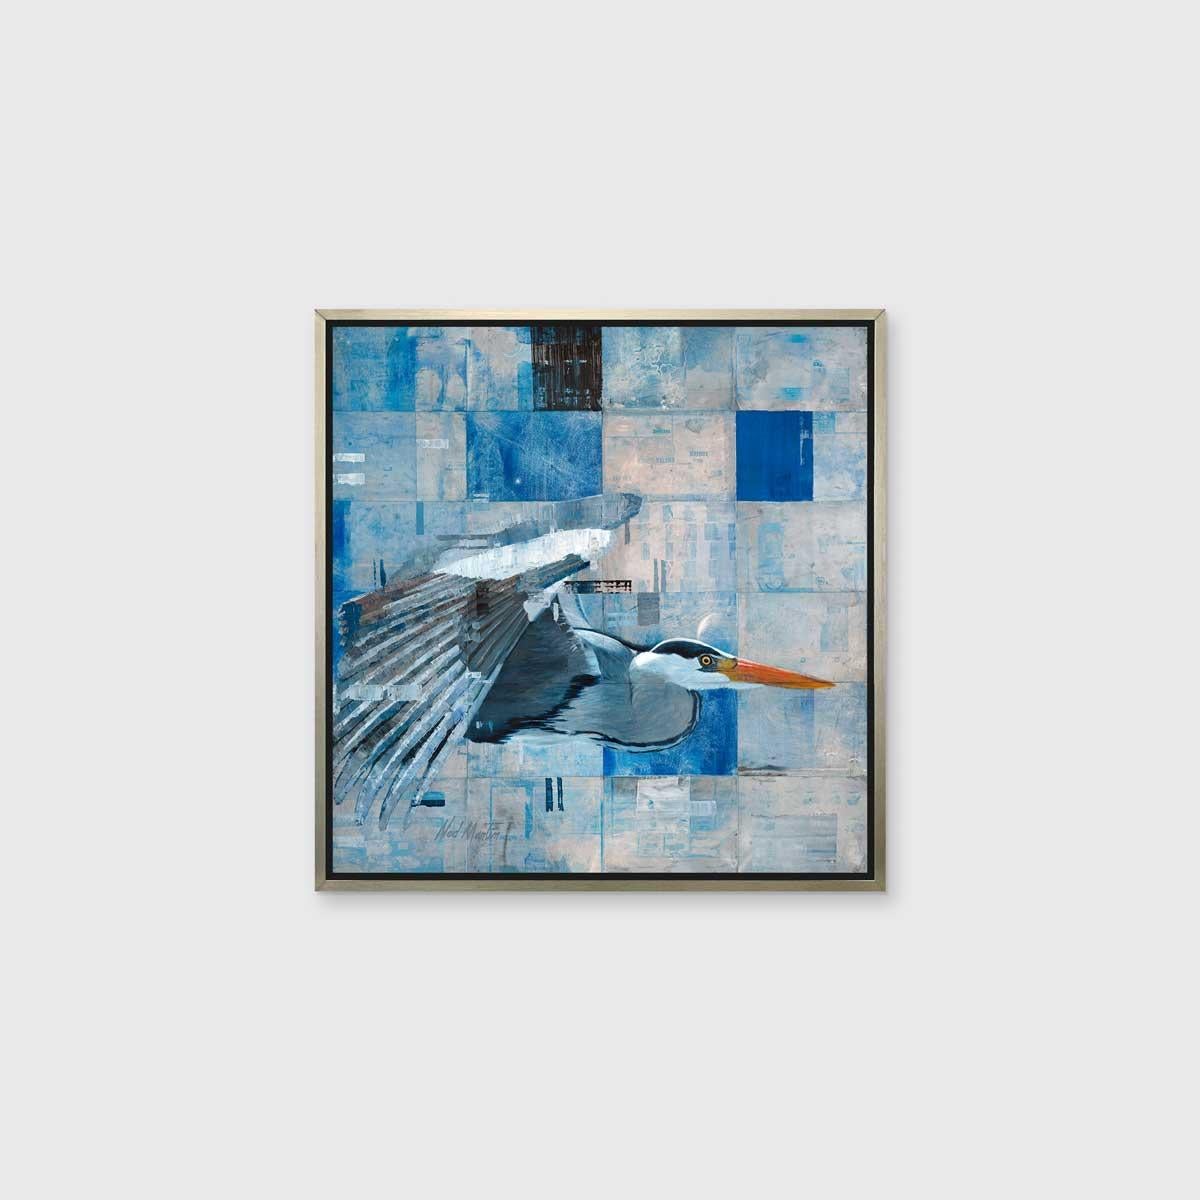 Dieser abstrakte Druck des Künstlers Ned Martin in limitierter Auflage zeigt einen blauen Reiher im Profil. Der Hintergrund besteht aus blauen, silbernen und schwarzen Quadraten, die gekachelt und übereinander gelegt sind, wobei einige Rechtecke